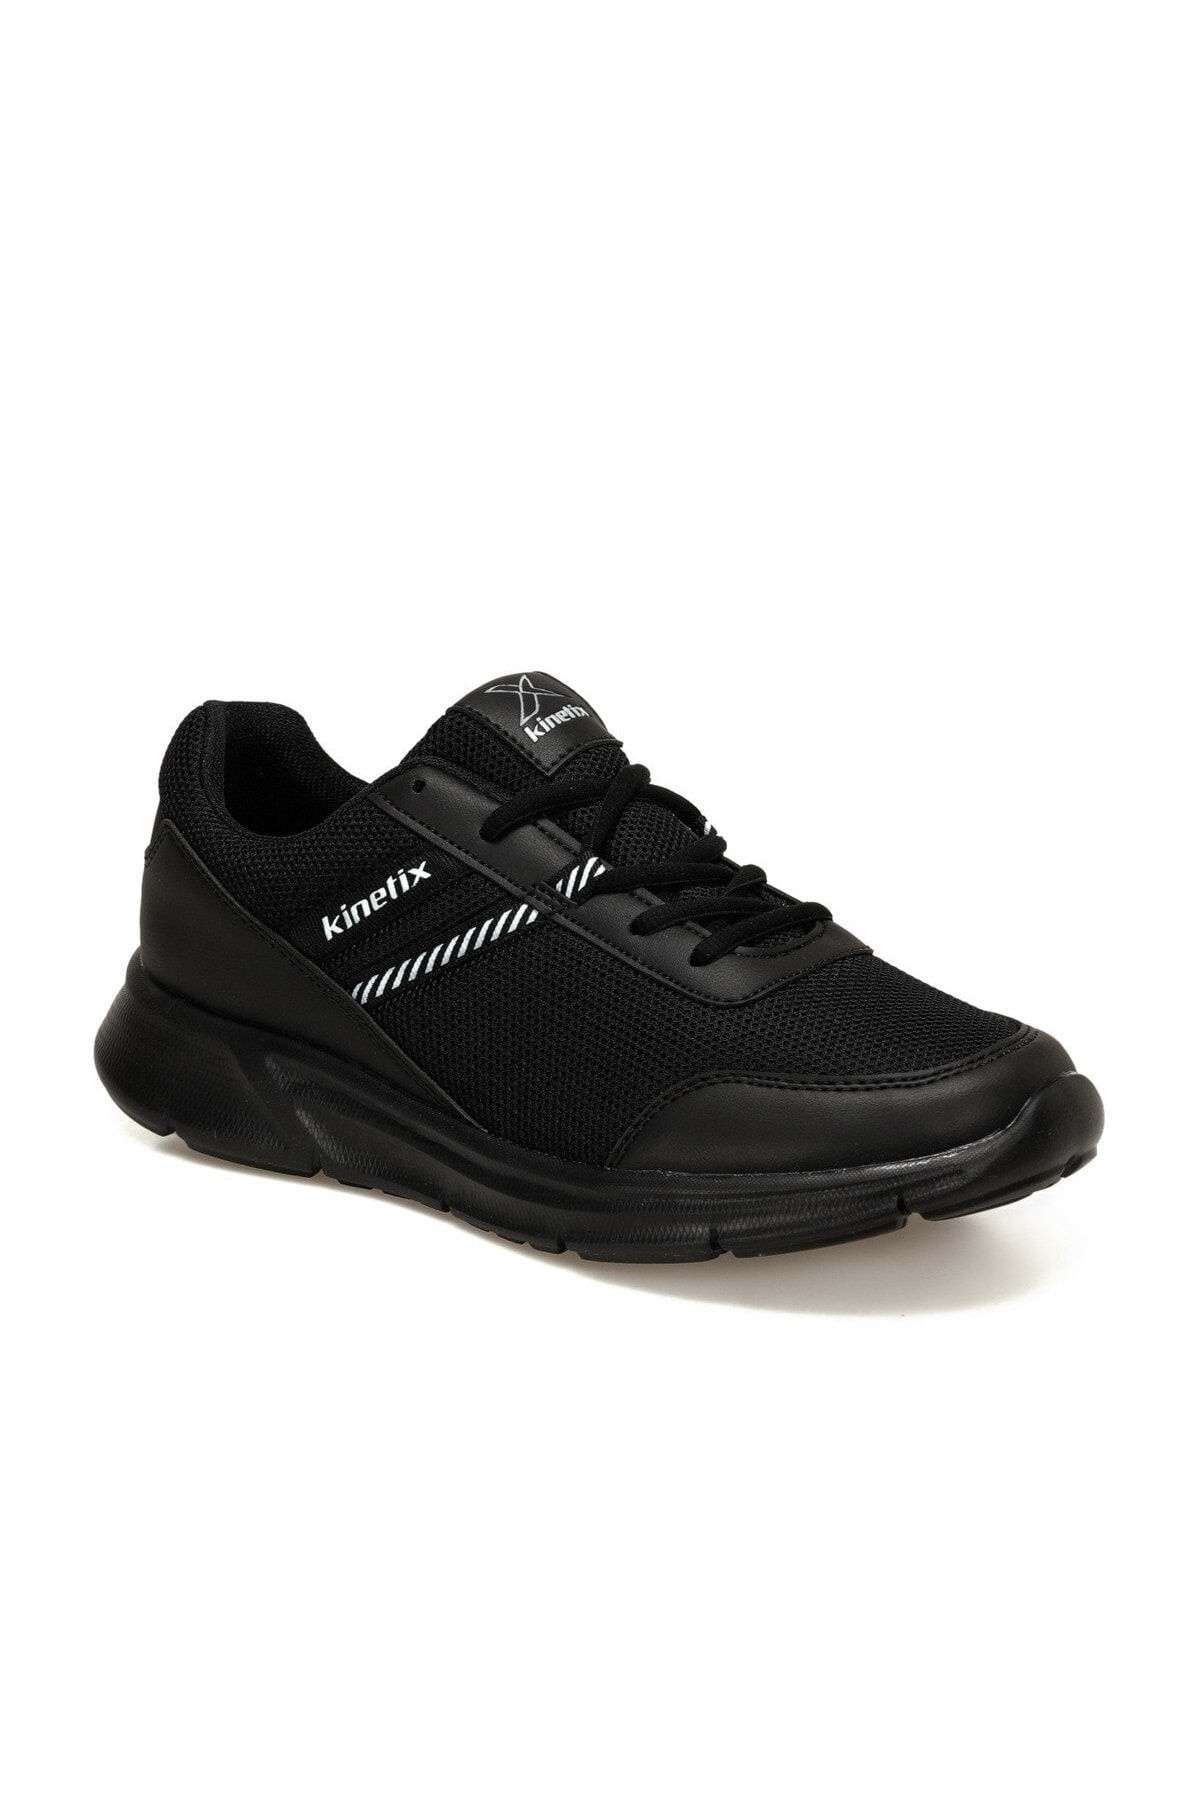 Kinetix Erkek Hafif Tabanlı Günlük Spor Ayakkabısı - Siyah - Btmz000342-siyah-44